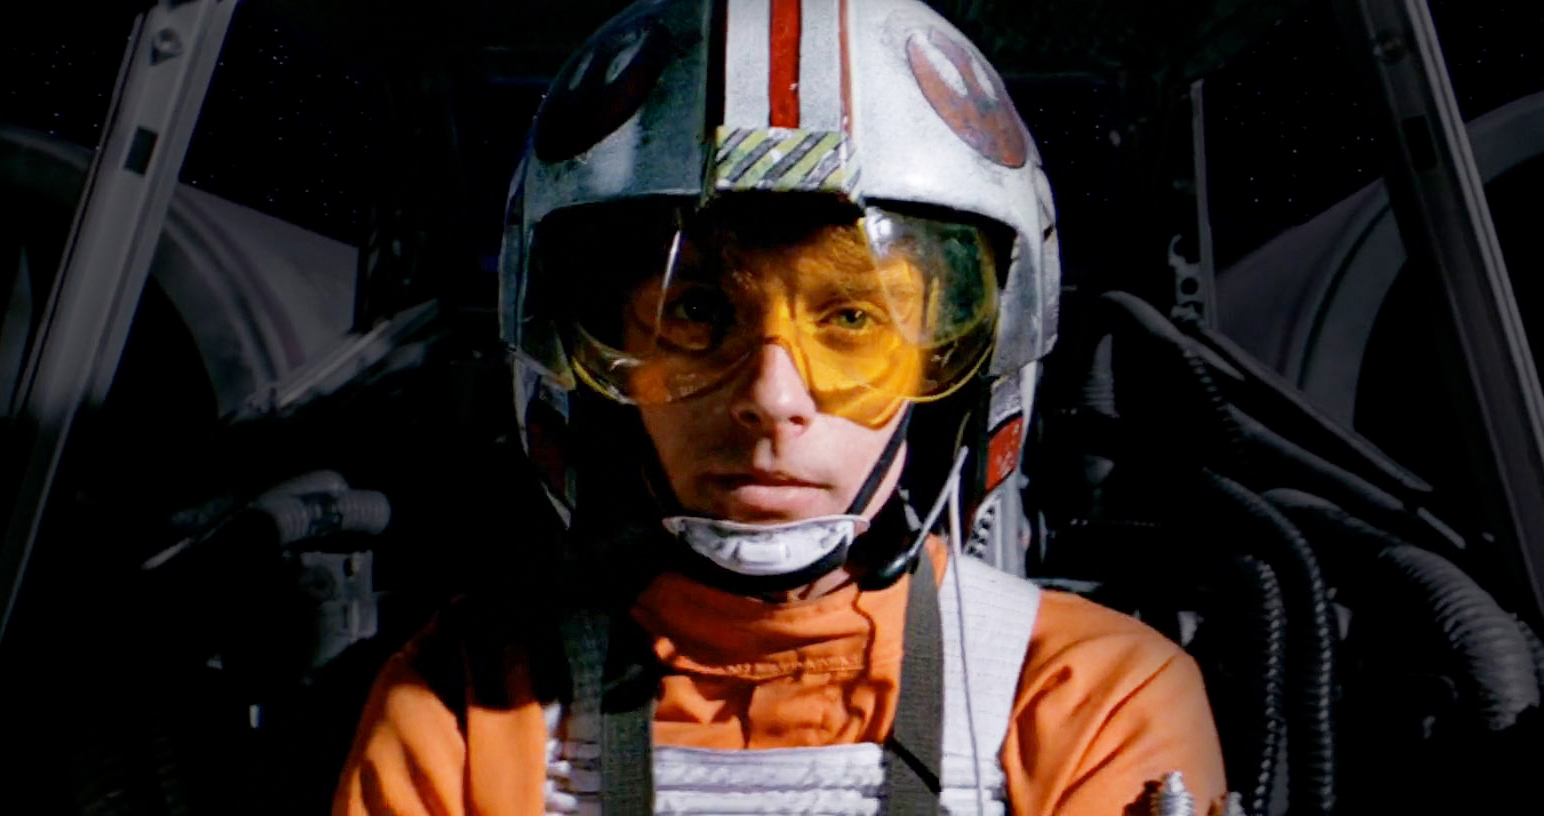 Люк Скайуокер пилот. Люк Скайуокер в костюме пилота. Люк Скайуокер пилот в шлеме. Star Wars пилот повстанцев. Люк на шлеме